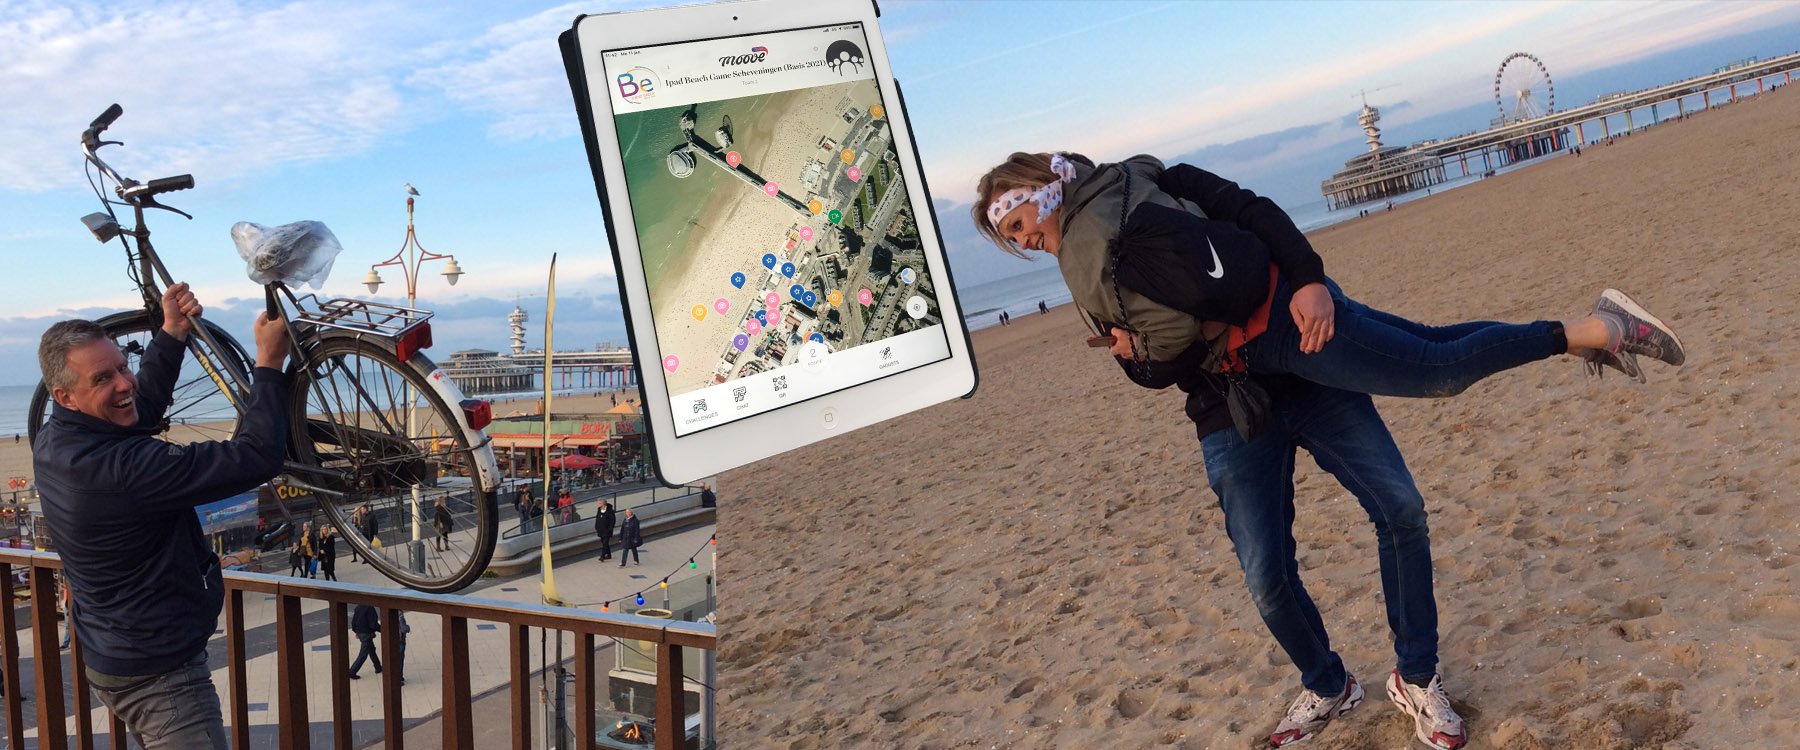 iPad Beach slider 1a.jpg